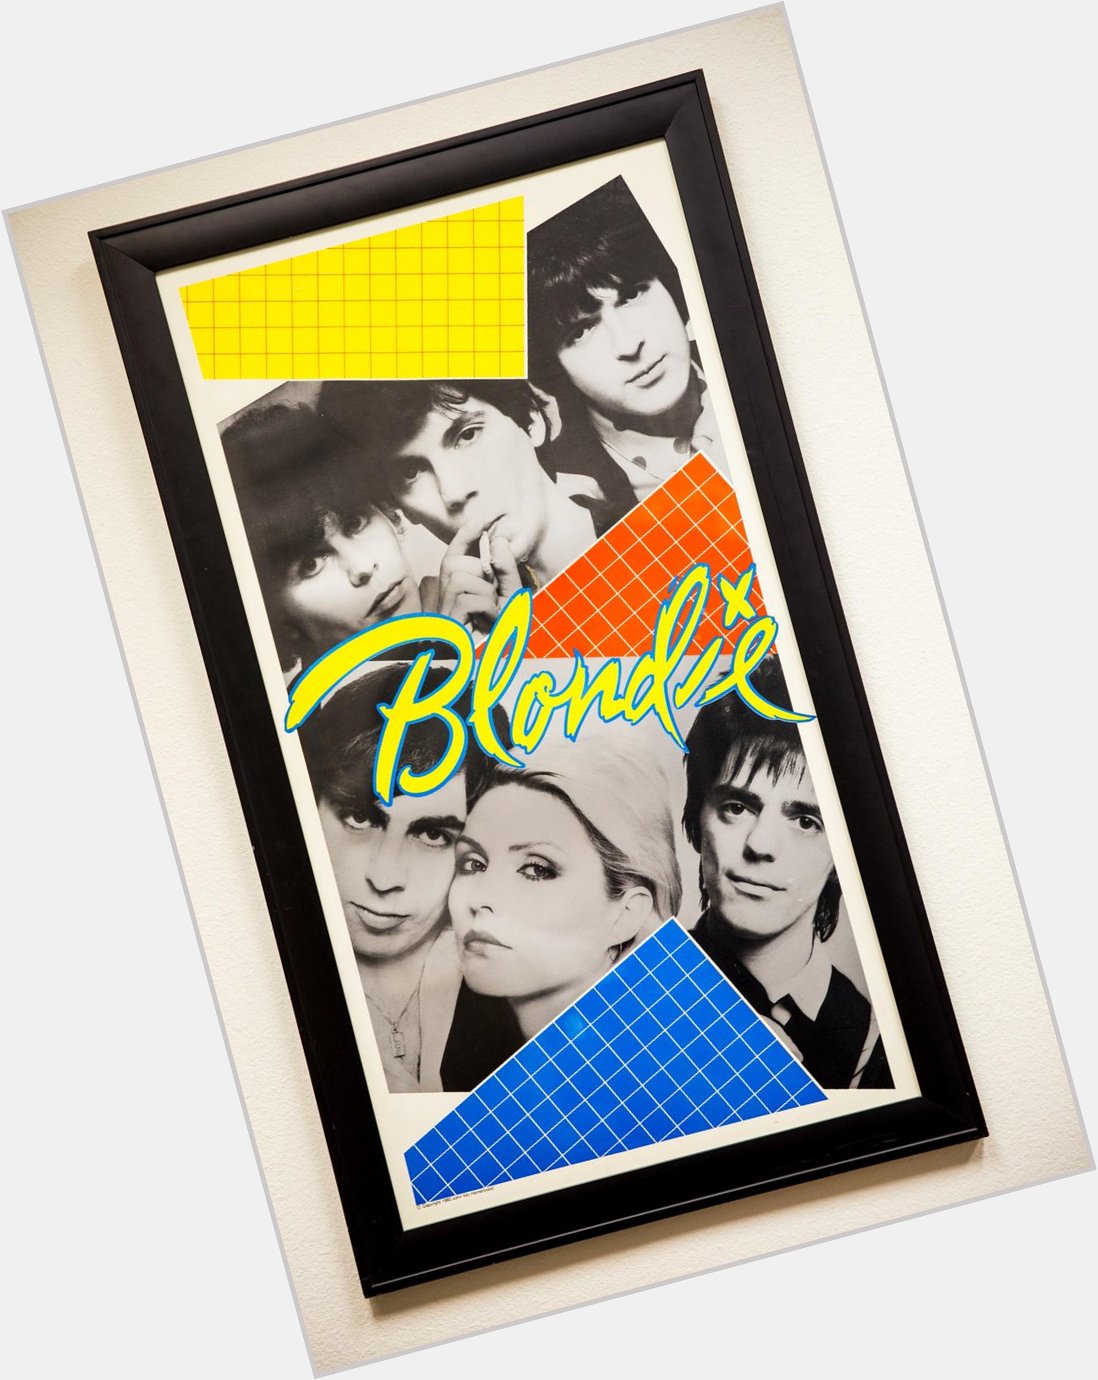 Happy Birthday to Chris Stein of Blondie!!! Poster in the Harveys
Office by Jon Van Hamersveld  